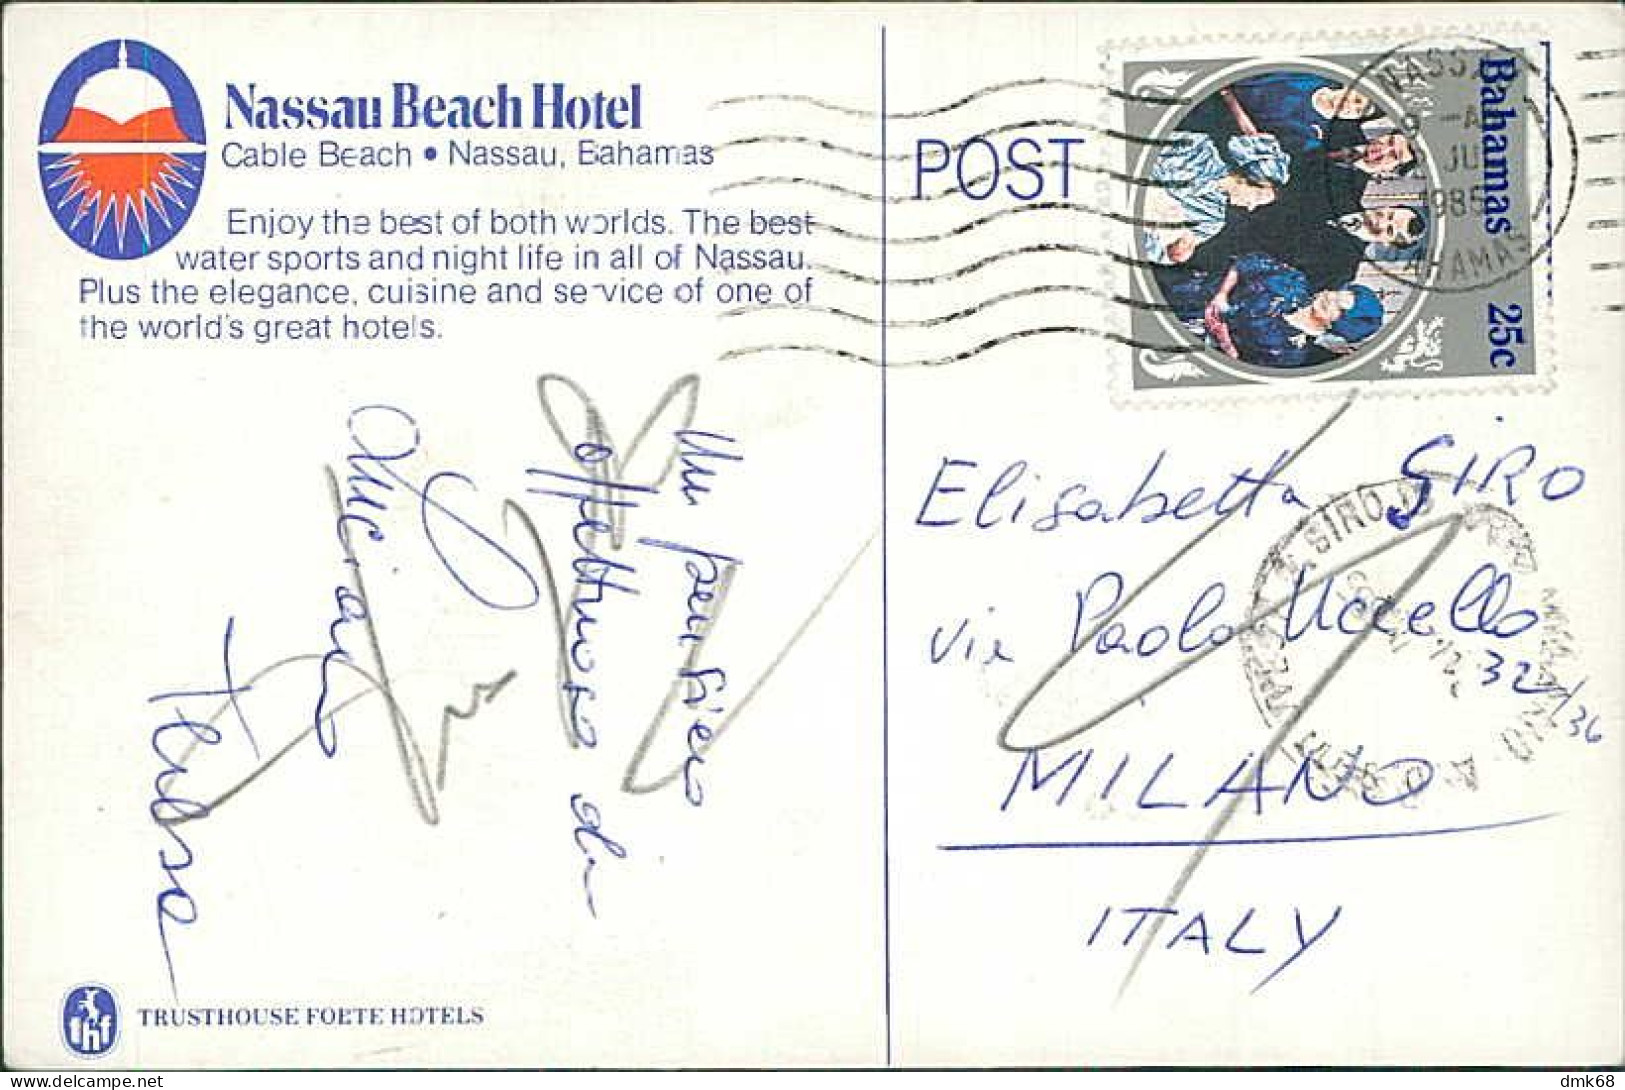 BAHAMAS - NASSAU BEACH HOTEL - TRUSTHOUSE FORTE HOTELS - MAILED TO ITALY 1985 - STAMP - 1970  (17423) - Bahamas